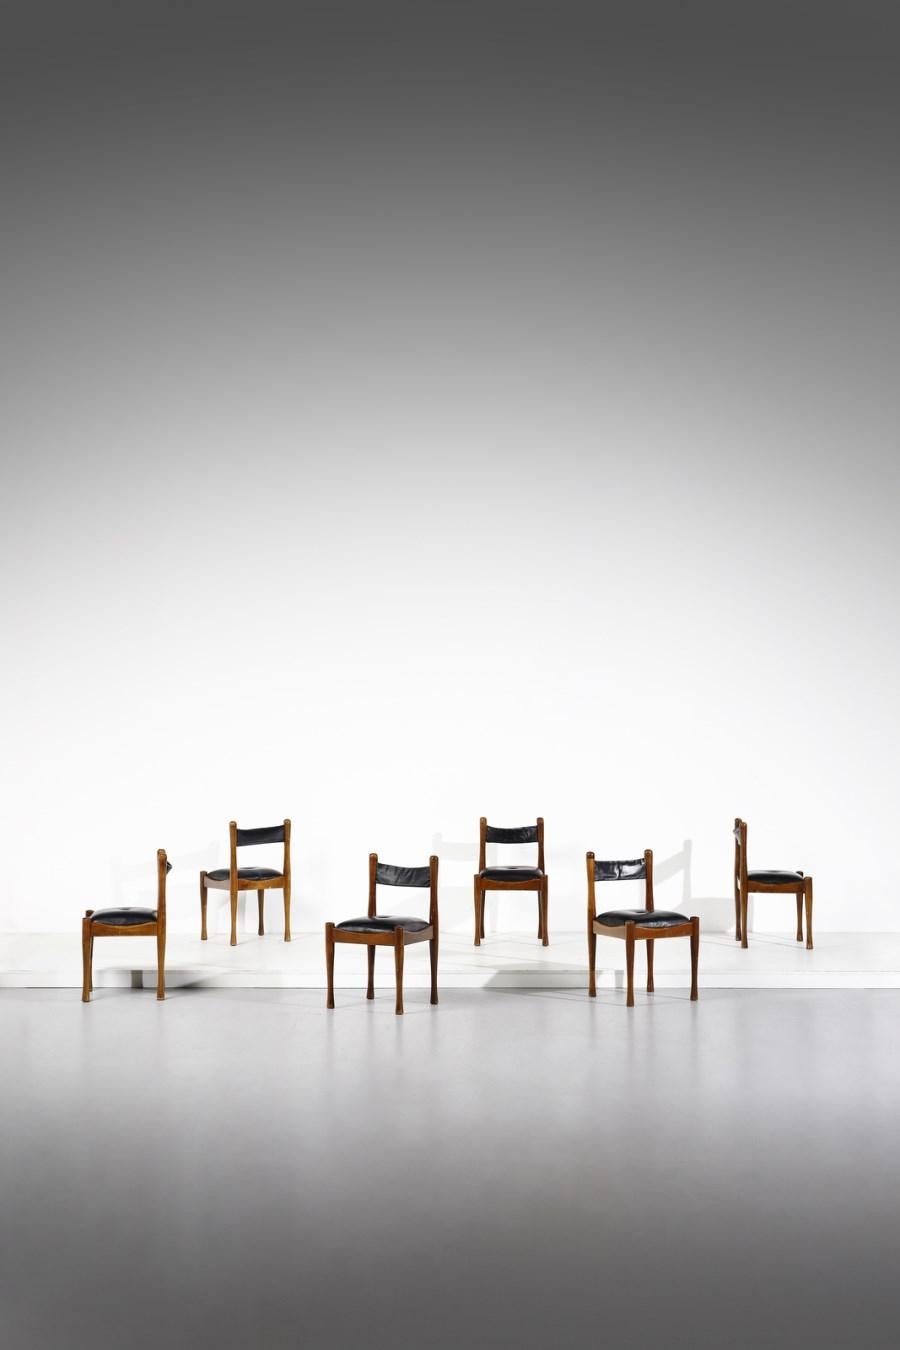 Silvio Coppola für Bernini, 6 Esszimmerstühle, gebeiztes Holz, schwarzes Leder, Italien, 1960er

Diese Stühle wurden in den 1960er Jahren von Silvio Coppola für Bernini entworfen. Sie haben einen dunklen Rahmen und schwarze Ledersitze mit